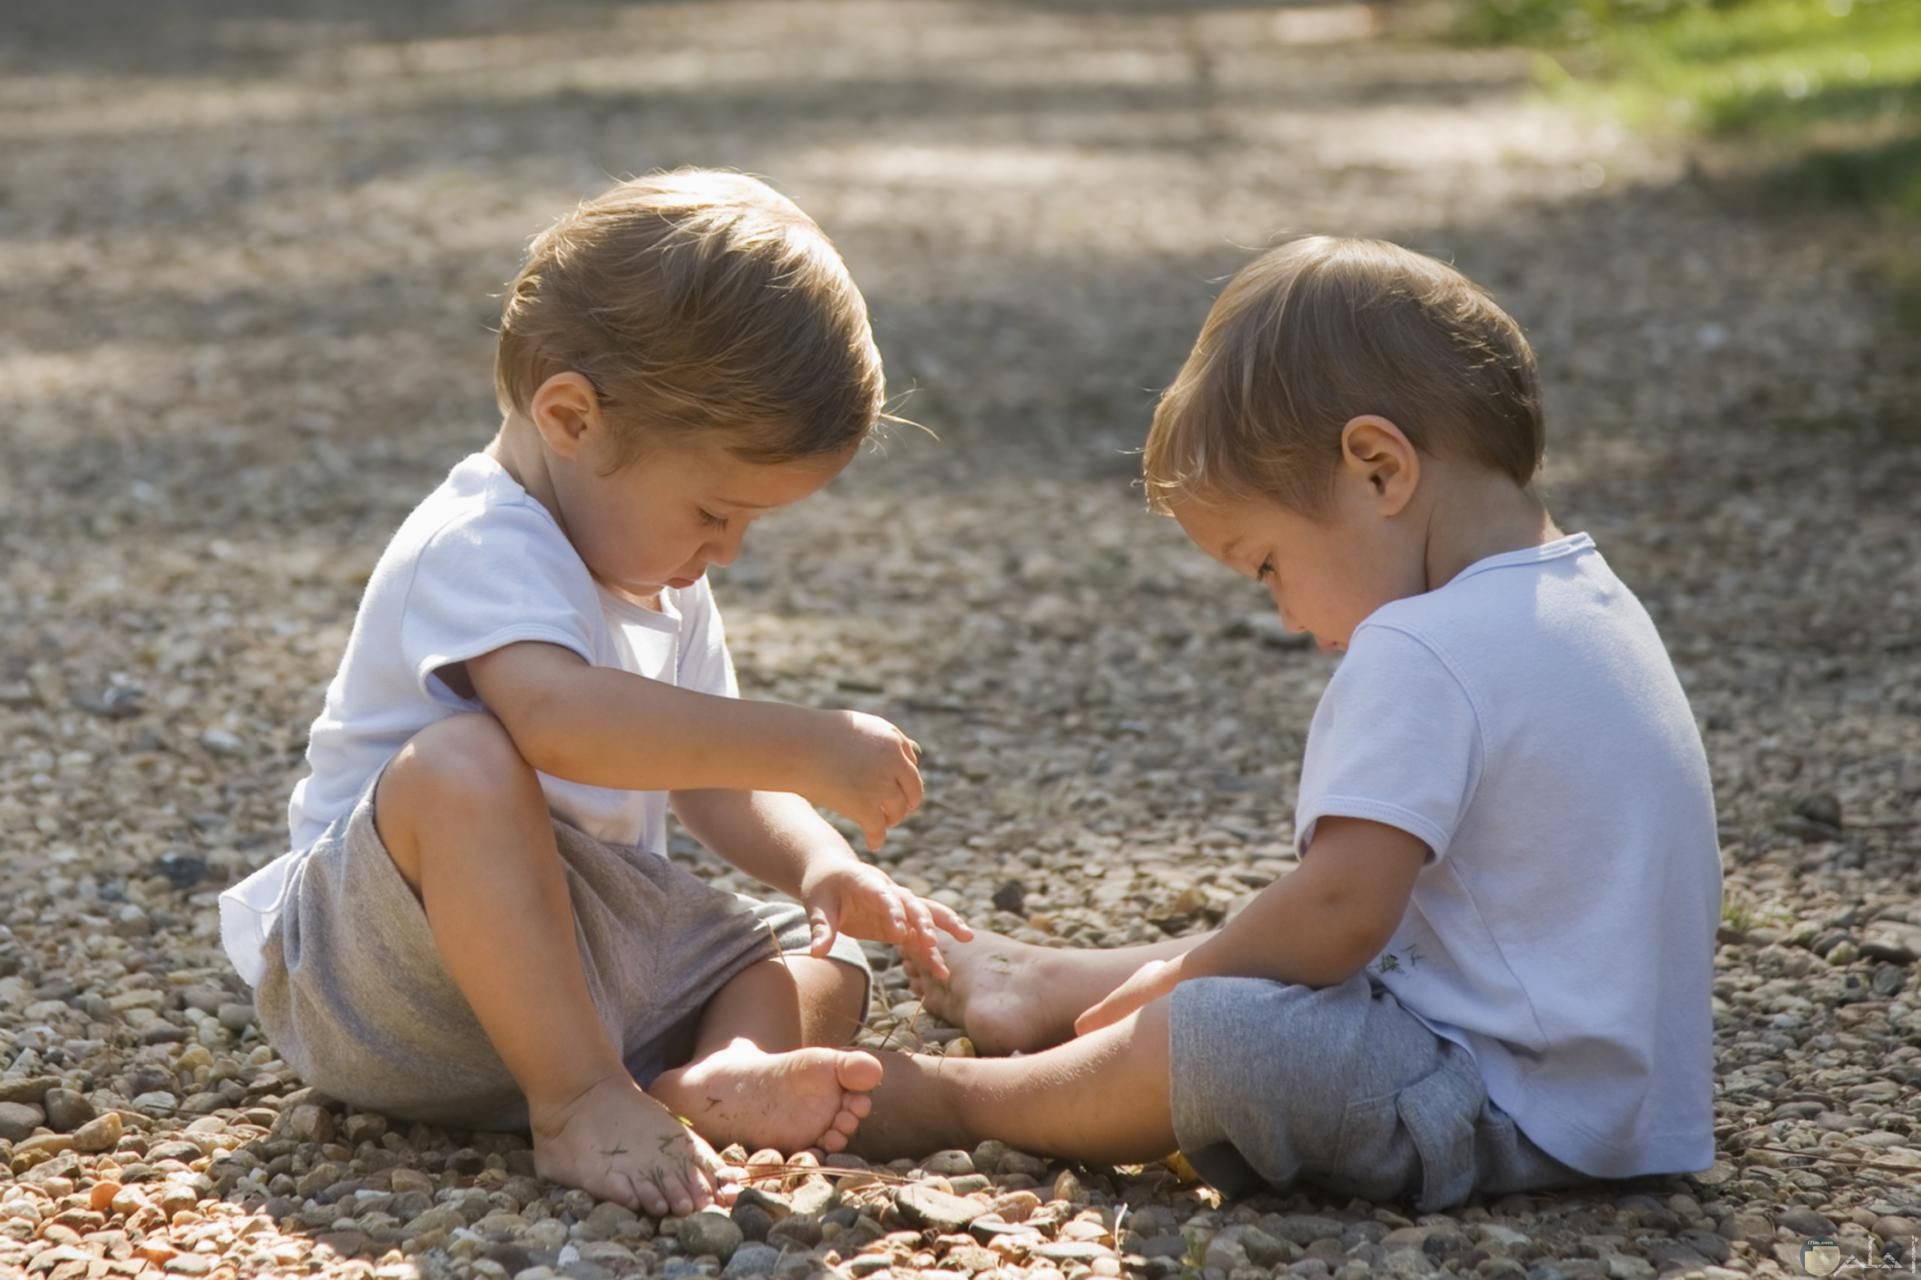 صورة جميلة لطفلين توأن يلعبون سوياً علي الأرض